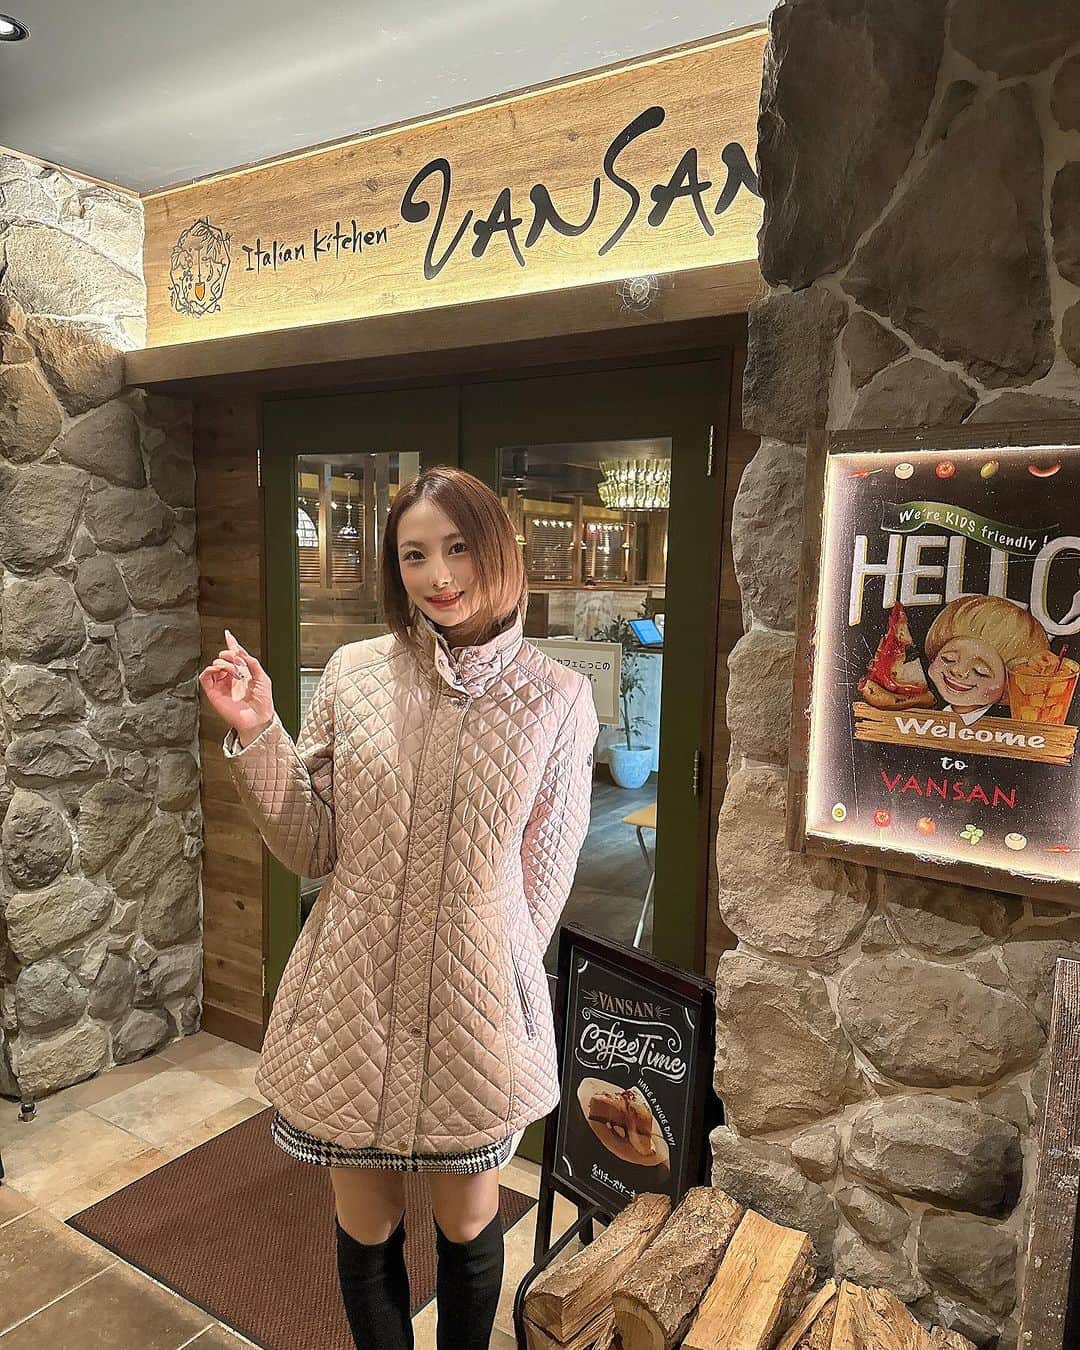 さやかのインスタグラム：「@vansan_obihiro  バンサンさん 素敵なお店です💓 皆様も是非是非ーー！ 皆様こんばんは、トゥエンティートゥー【BAR】#北海道#帯広駅から徒歩５分にある全cast可愛い女の子と店内はドバイmotifで綺麗な空間です。御来店下さる全てのお客様に至福な時間を提供させて頂くよう、castの持ち味全てフル活用し、年中無休営業しております。臨時休業も御座いますのでSNSにて、最新情報はInstagram【sa0904ya】さやかをご確認下さい。お一人様から入りやすい60分飲み放題【3,500円】です。チャージ料は【無料】です。castのドリンクは【別料金】です。自動延長は一切御座いません。御好評のソファーは、席料2名様から1人【1,000円】頂いております。住所は、ラーメン屋どーもさんとフランス料理店シェマエダさんの間にあるお店。LEDが輝く非常に分かりやすいお店です。【20:00〜2:00金土3:00】営業時間までに【0155-67-0024】お電話orお届け【080-0012帯広市西2条南10丁目2番地エルプラザ】宜しくお願い致します。皆様の御来店を心からお待ちしております。#TWENTYTWO#帯広エルプラザ #帯広さやか#帯広バー#帯広BAR #北海道帯広市#帯広 #十勝帯広 #帯広飲み屋 #帯広写真  #北海道 #帯広可愛い #帯広ホステス #帯広飲み放題 #帯広アルバイト募集#帯広アルバイト#帯広求人 #帯広おすすめ #帯広女の子#帯広バイト募集 #帯広オシャレ#帯広グルメ#帯広看板娘#帯広祭り#帯広コスプレ#帯広イベント#帯広カフェ」